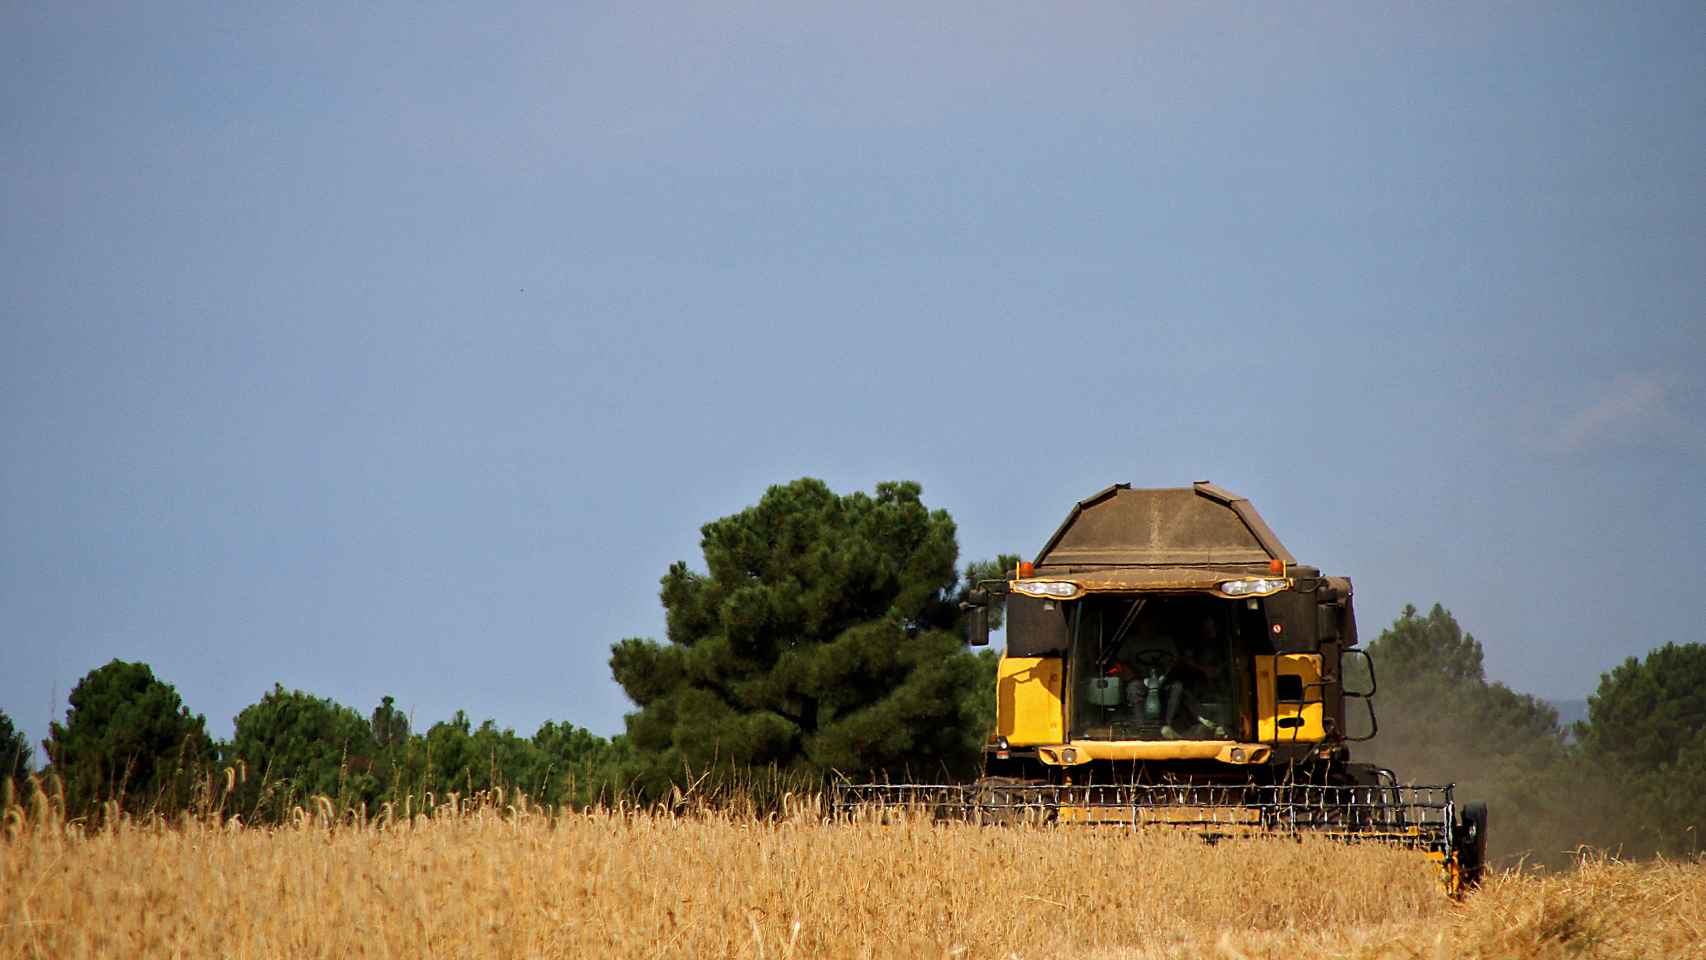 Una cosechadora atraviesa un campo de cereal.